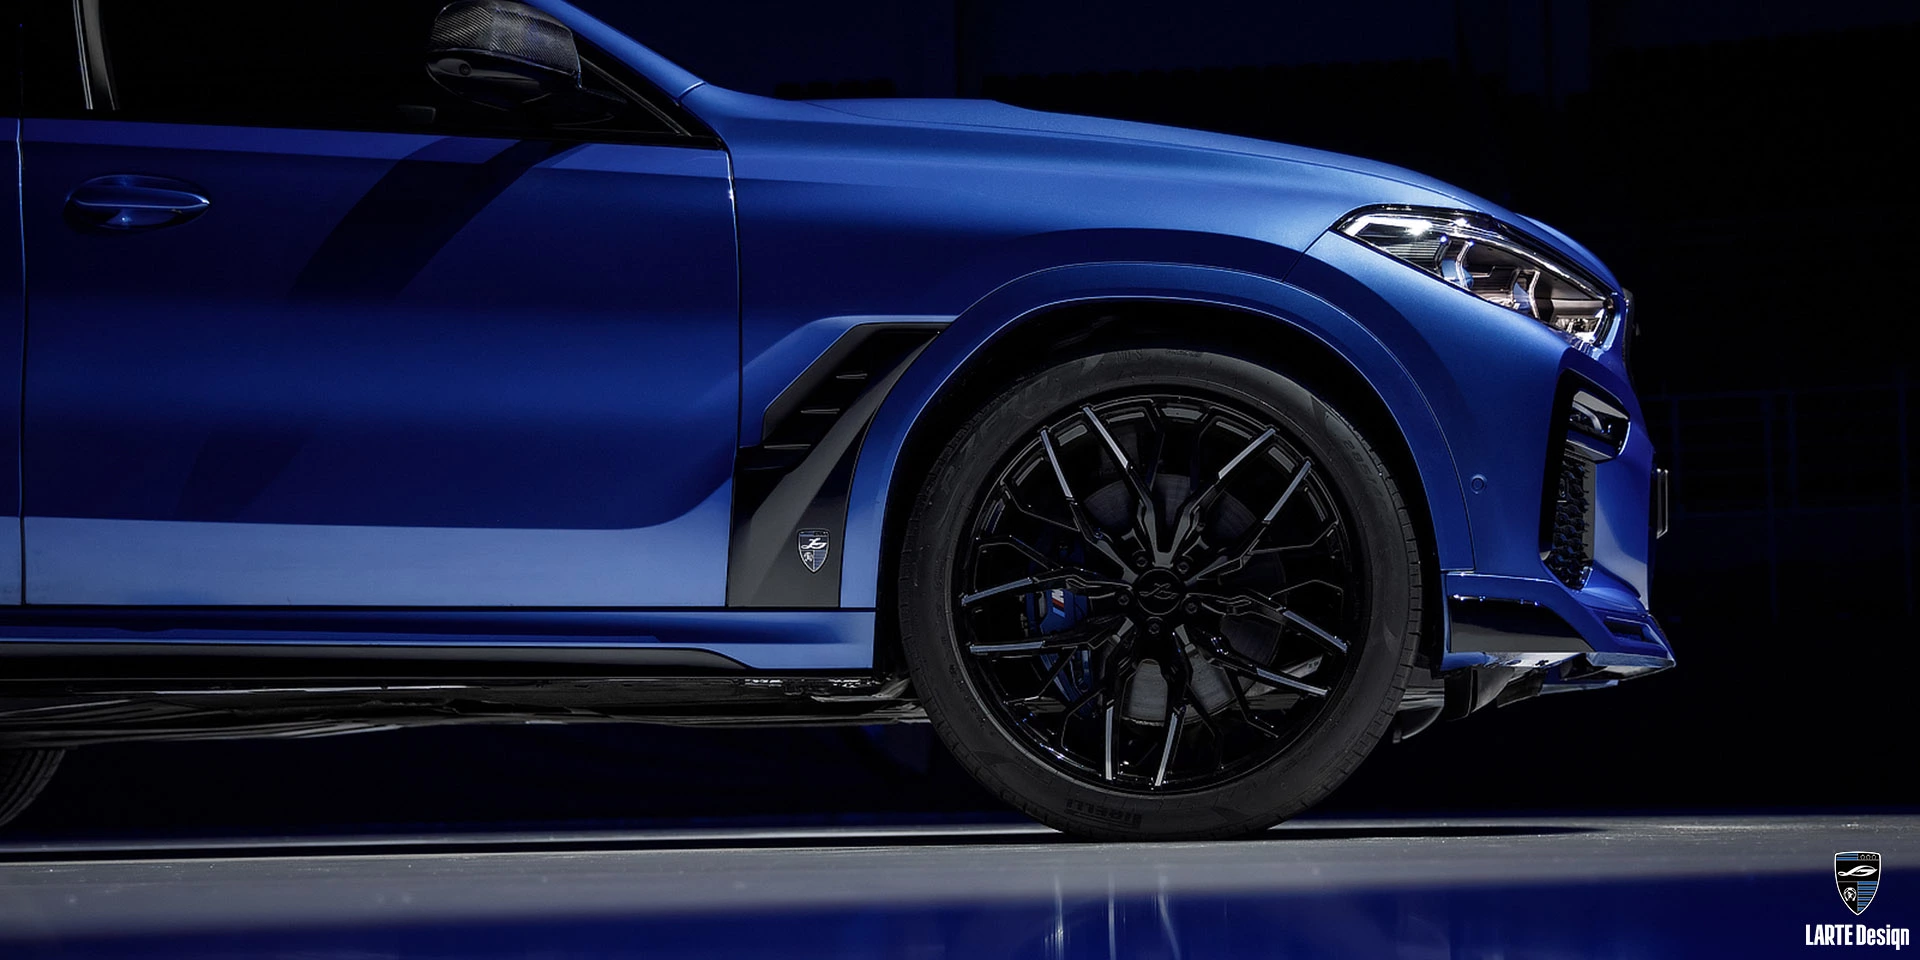 Kaufen Sie Serienschmiederäder aus Carbonfaser für den LARTE Performance BMW X6 M Sport G06 in Phytonic Blue Metallic